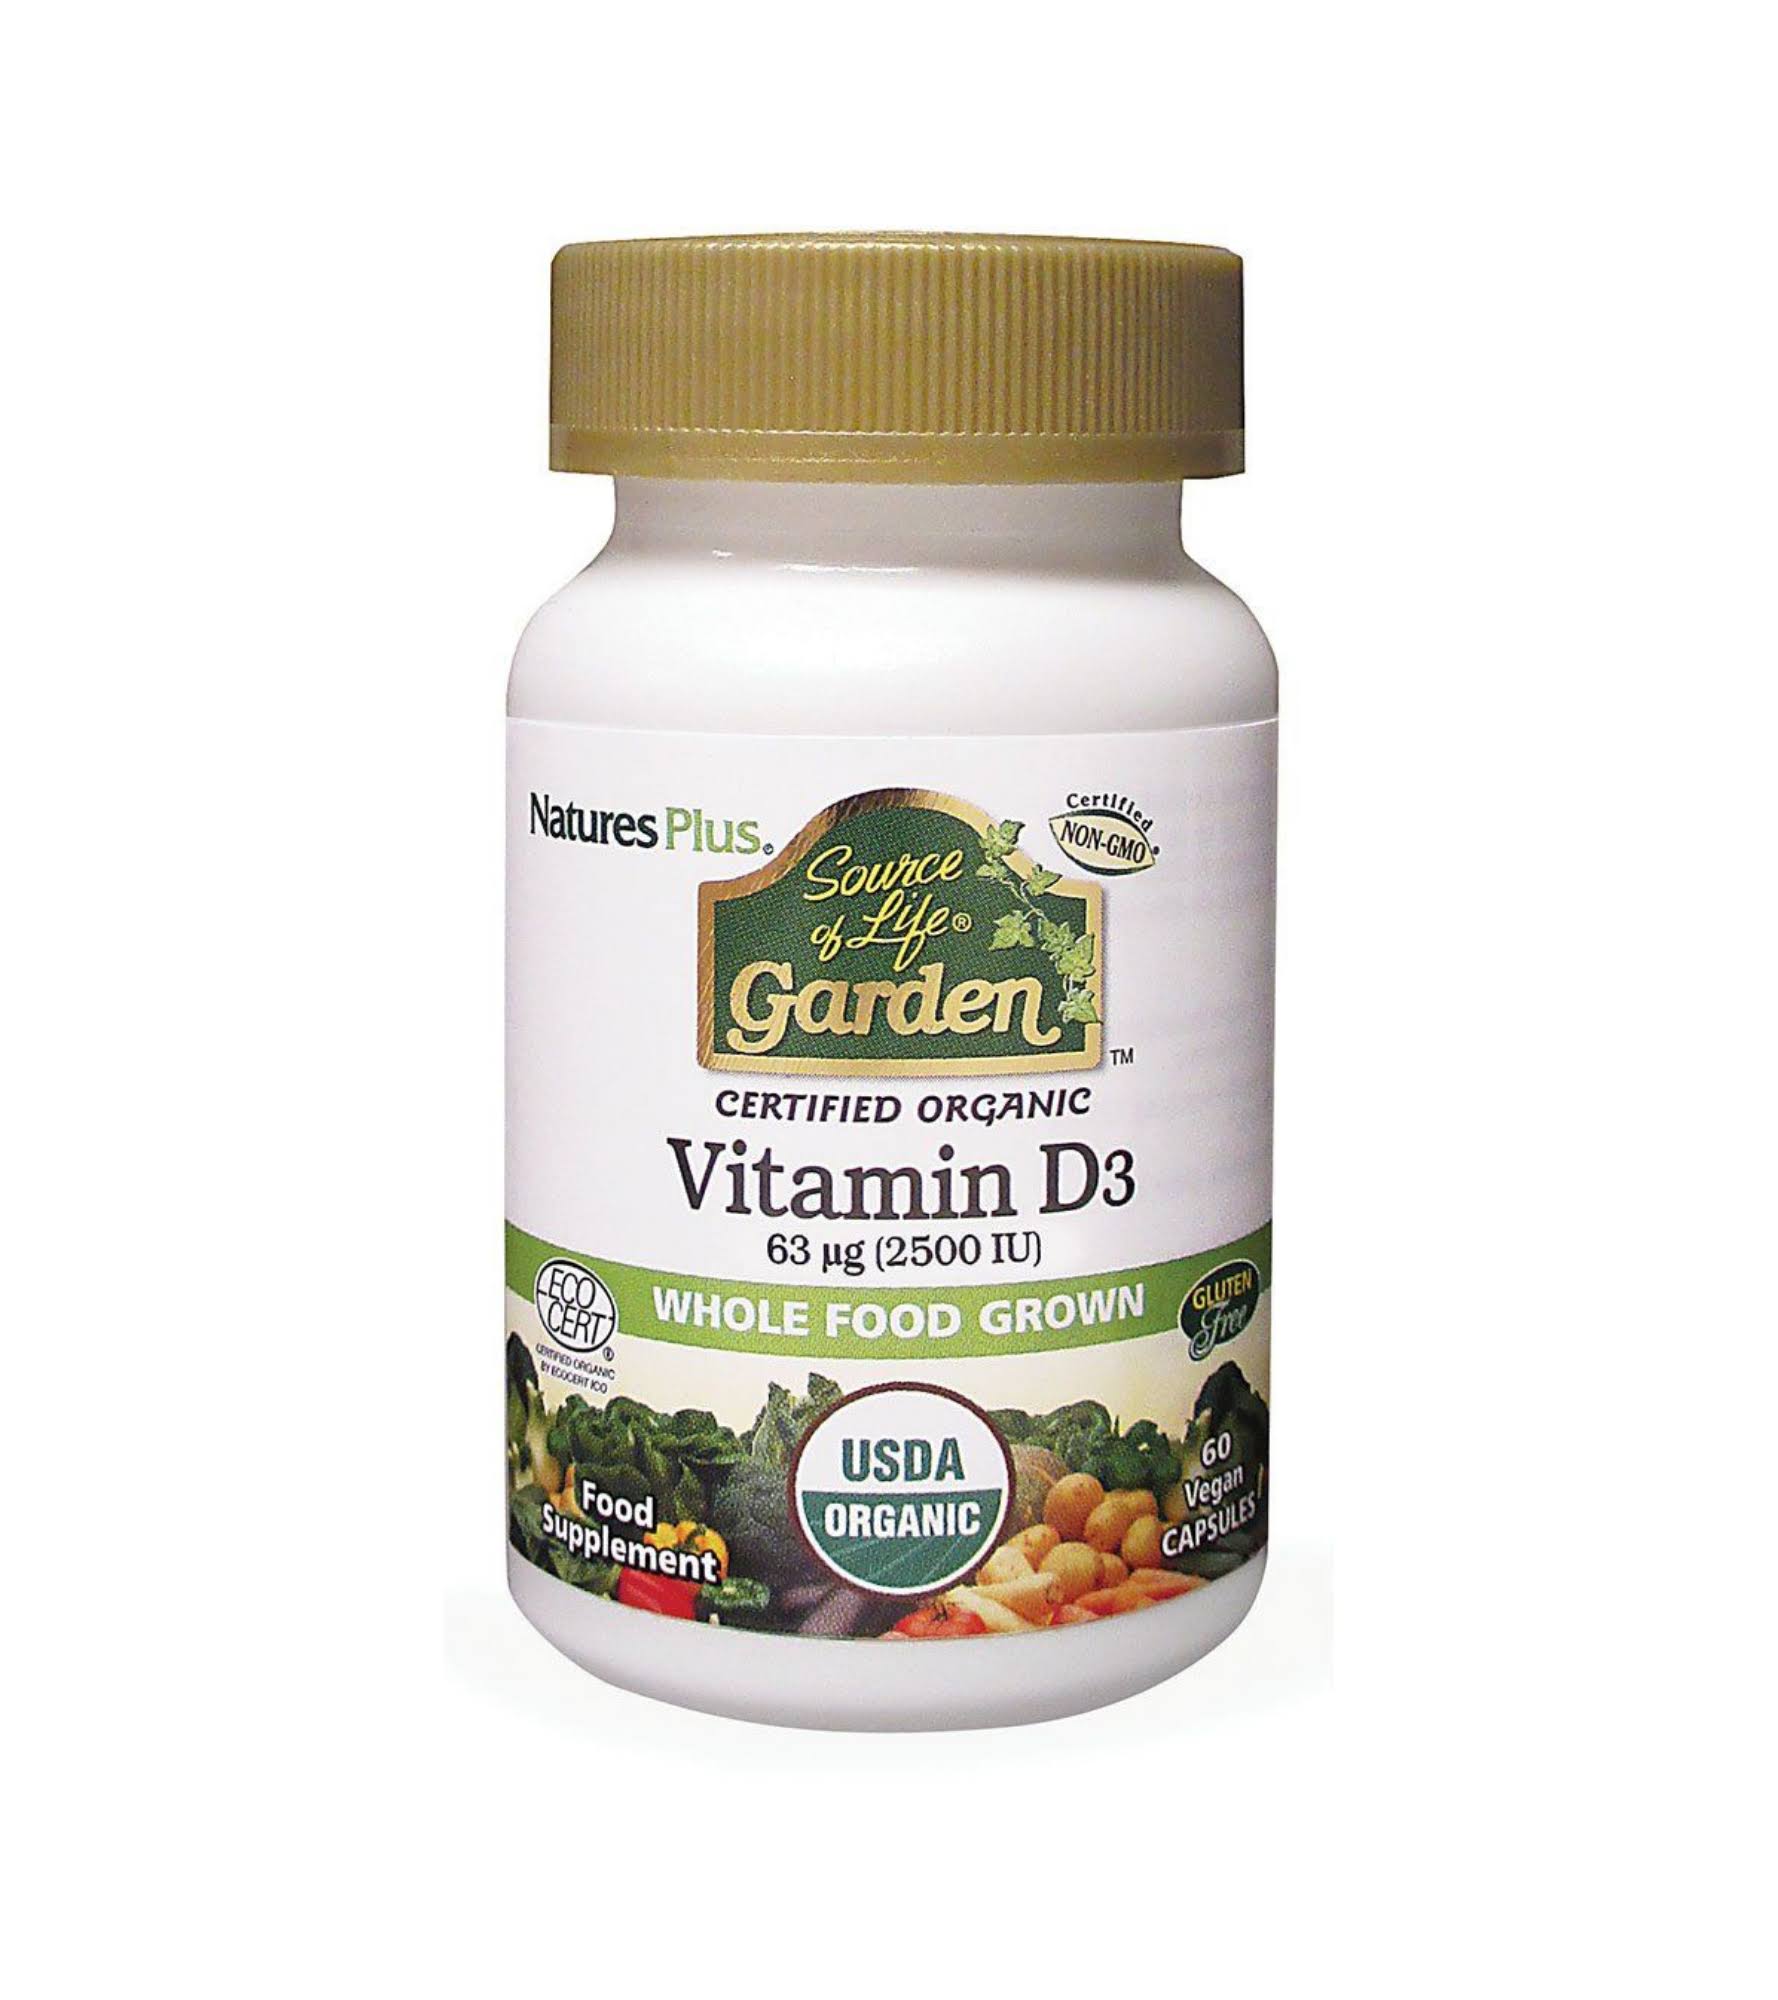 Natures Plus Source of Life Garden Organic Vitamin D3 2500iu (60 Capsules)